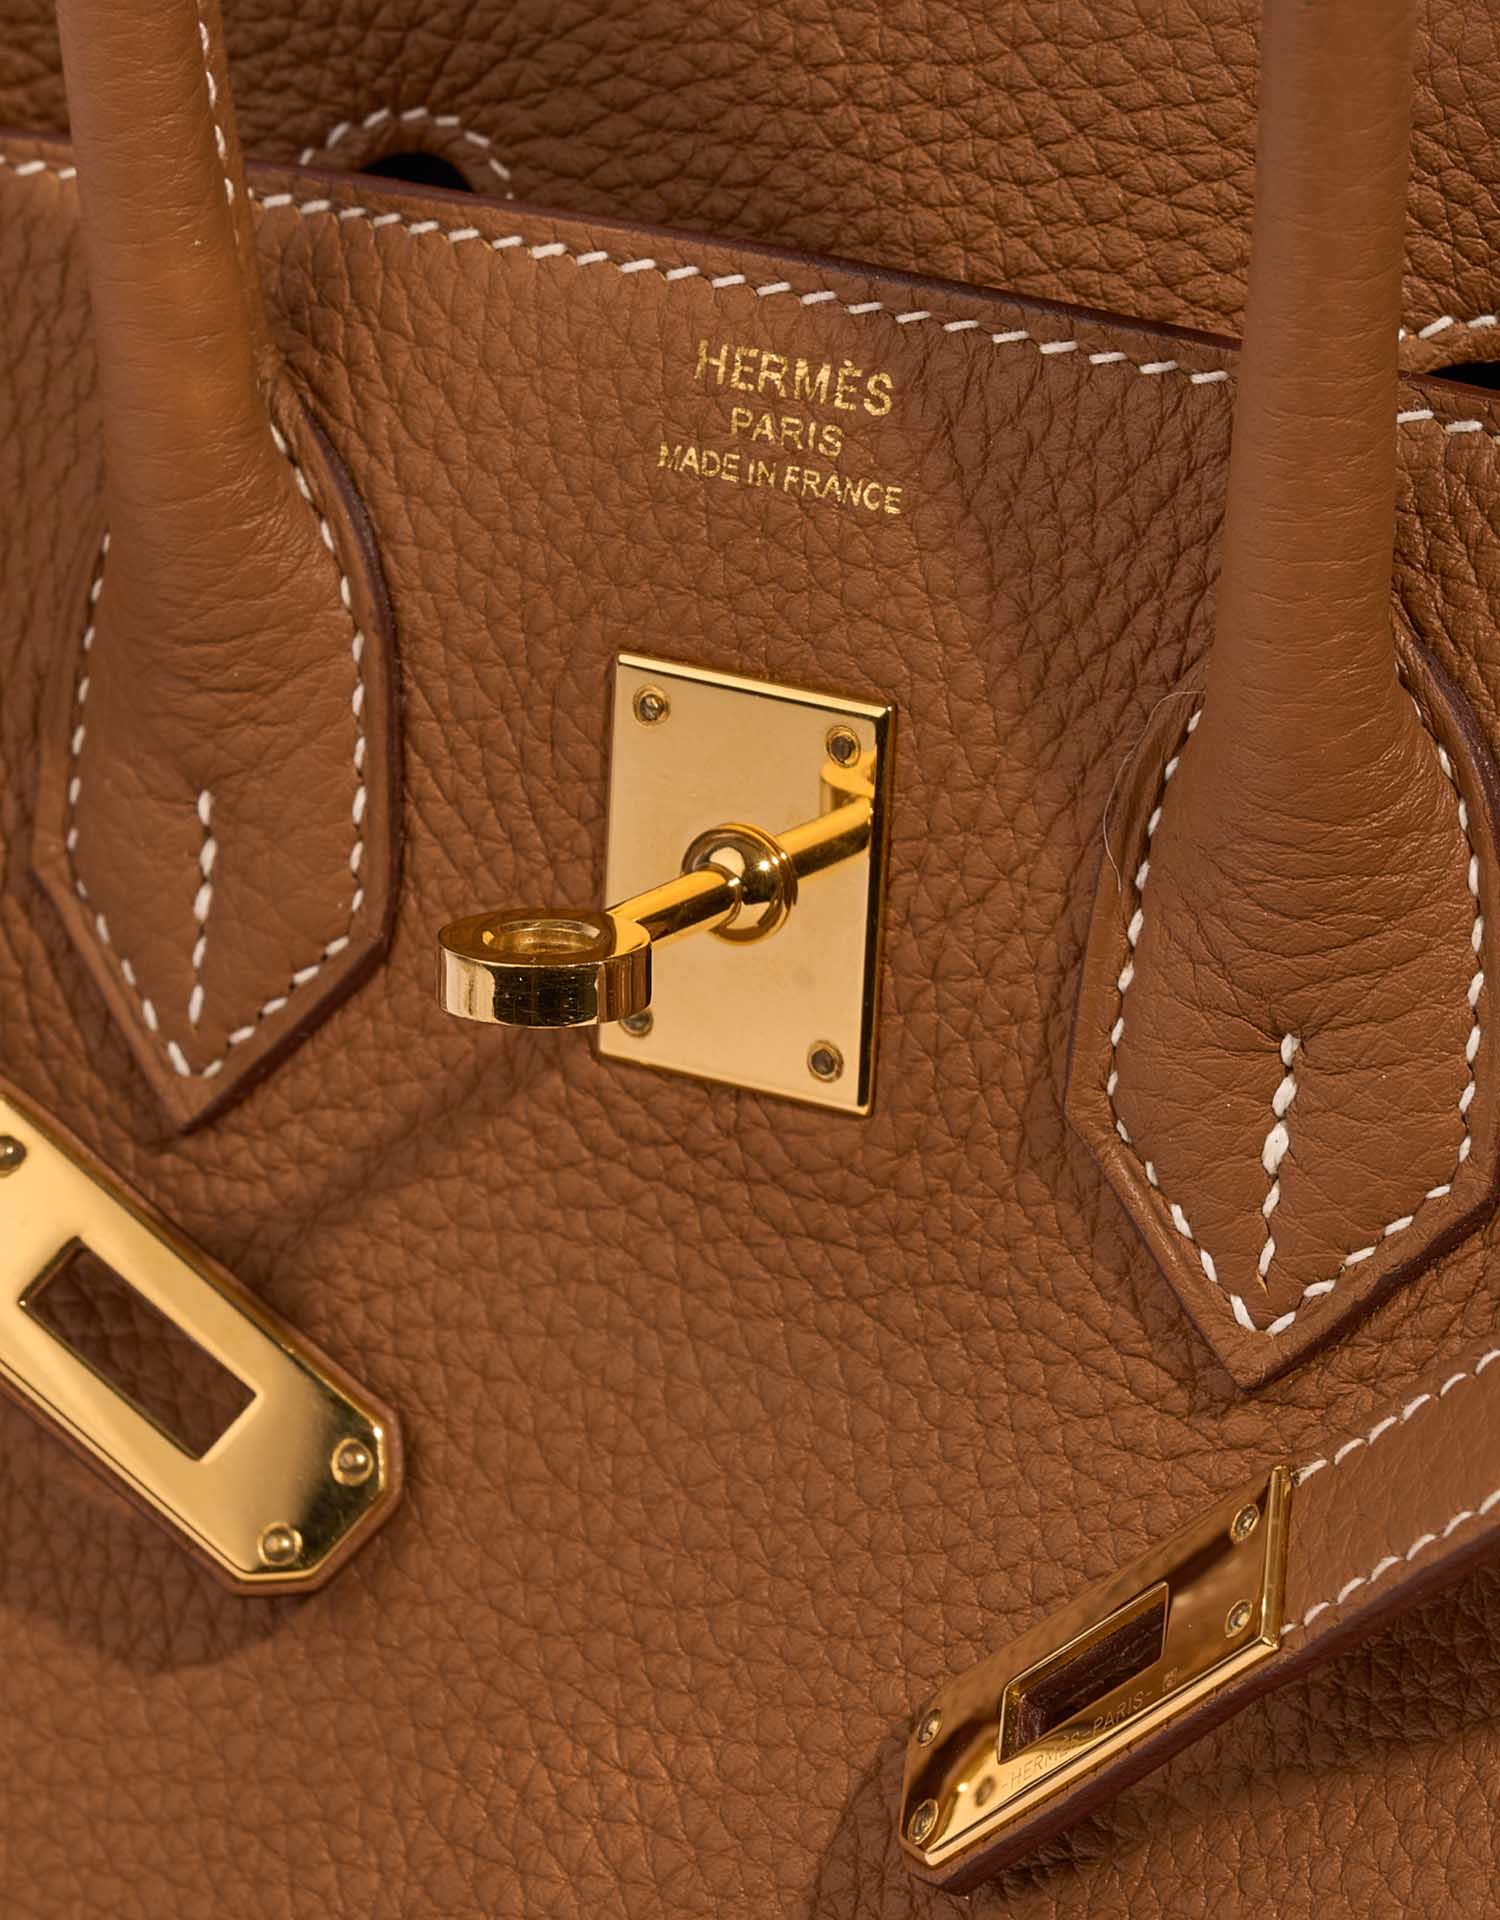 Hermes Birkin bag 25 Taupe grey Togo leather Gold hardware